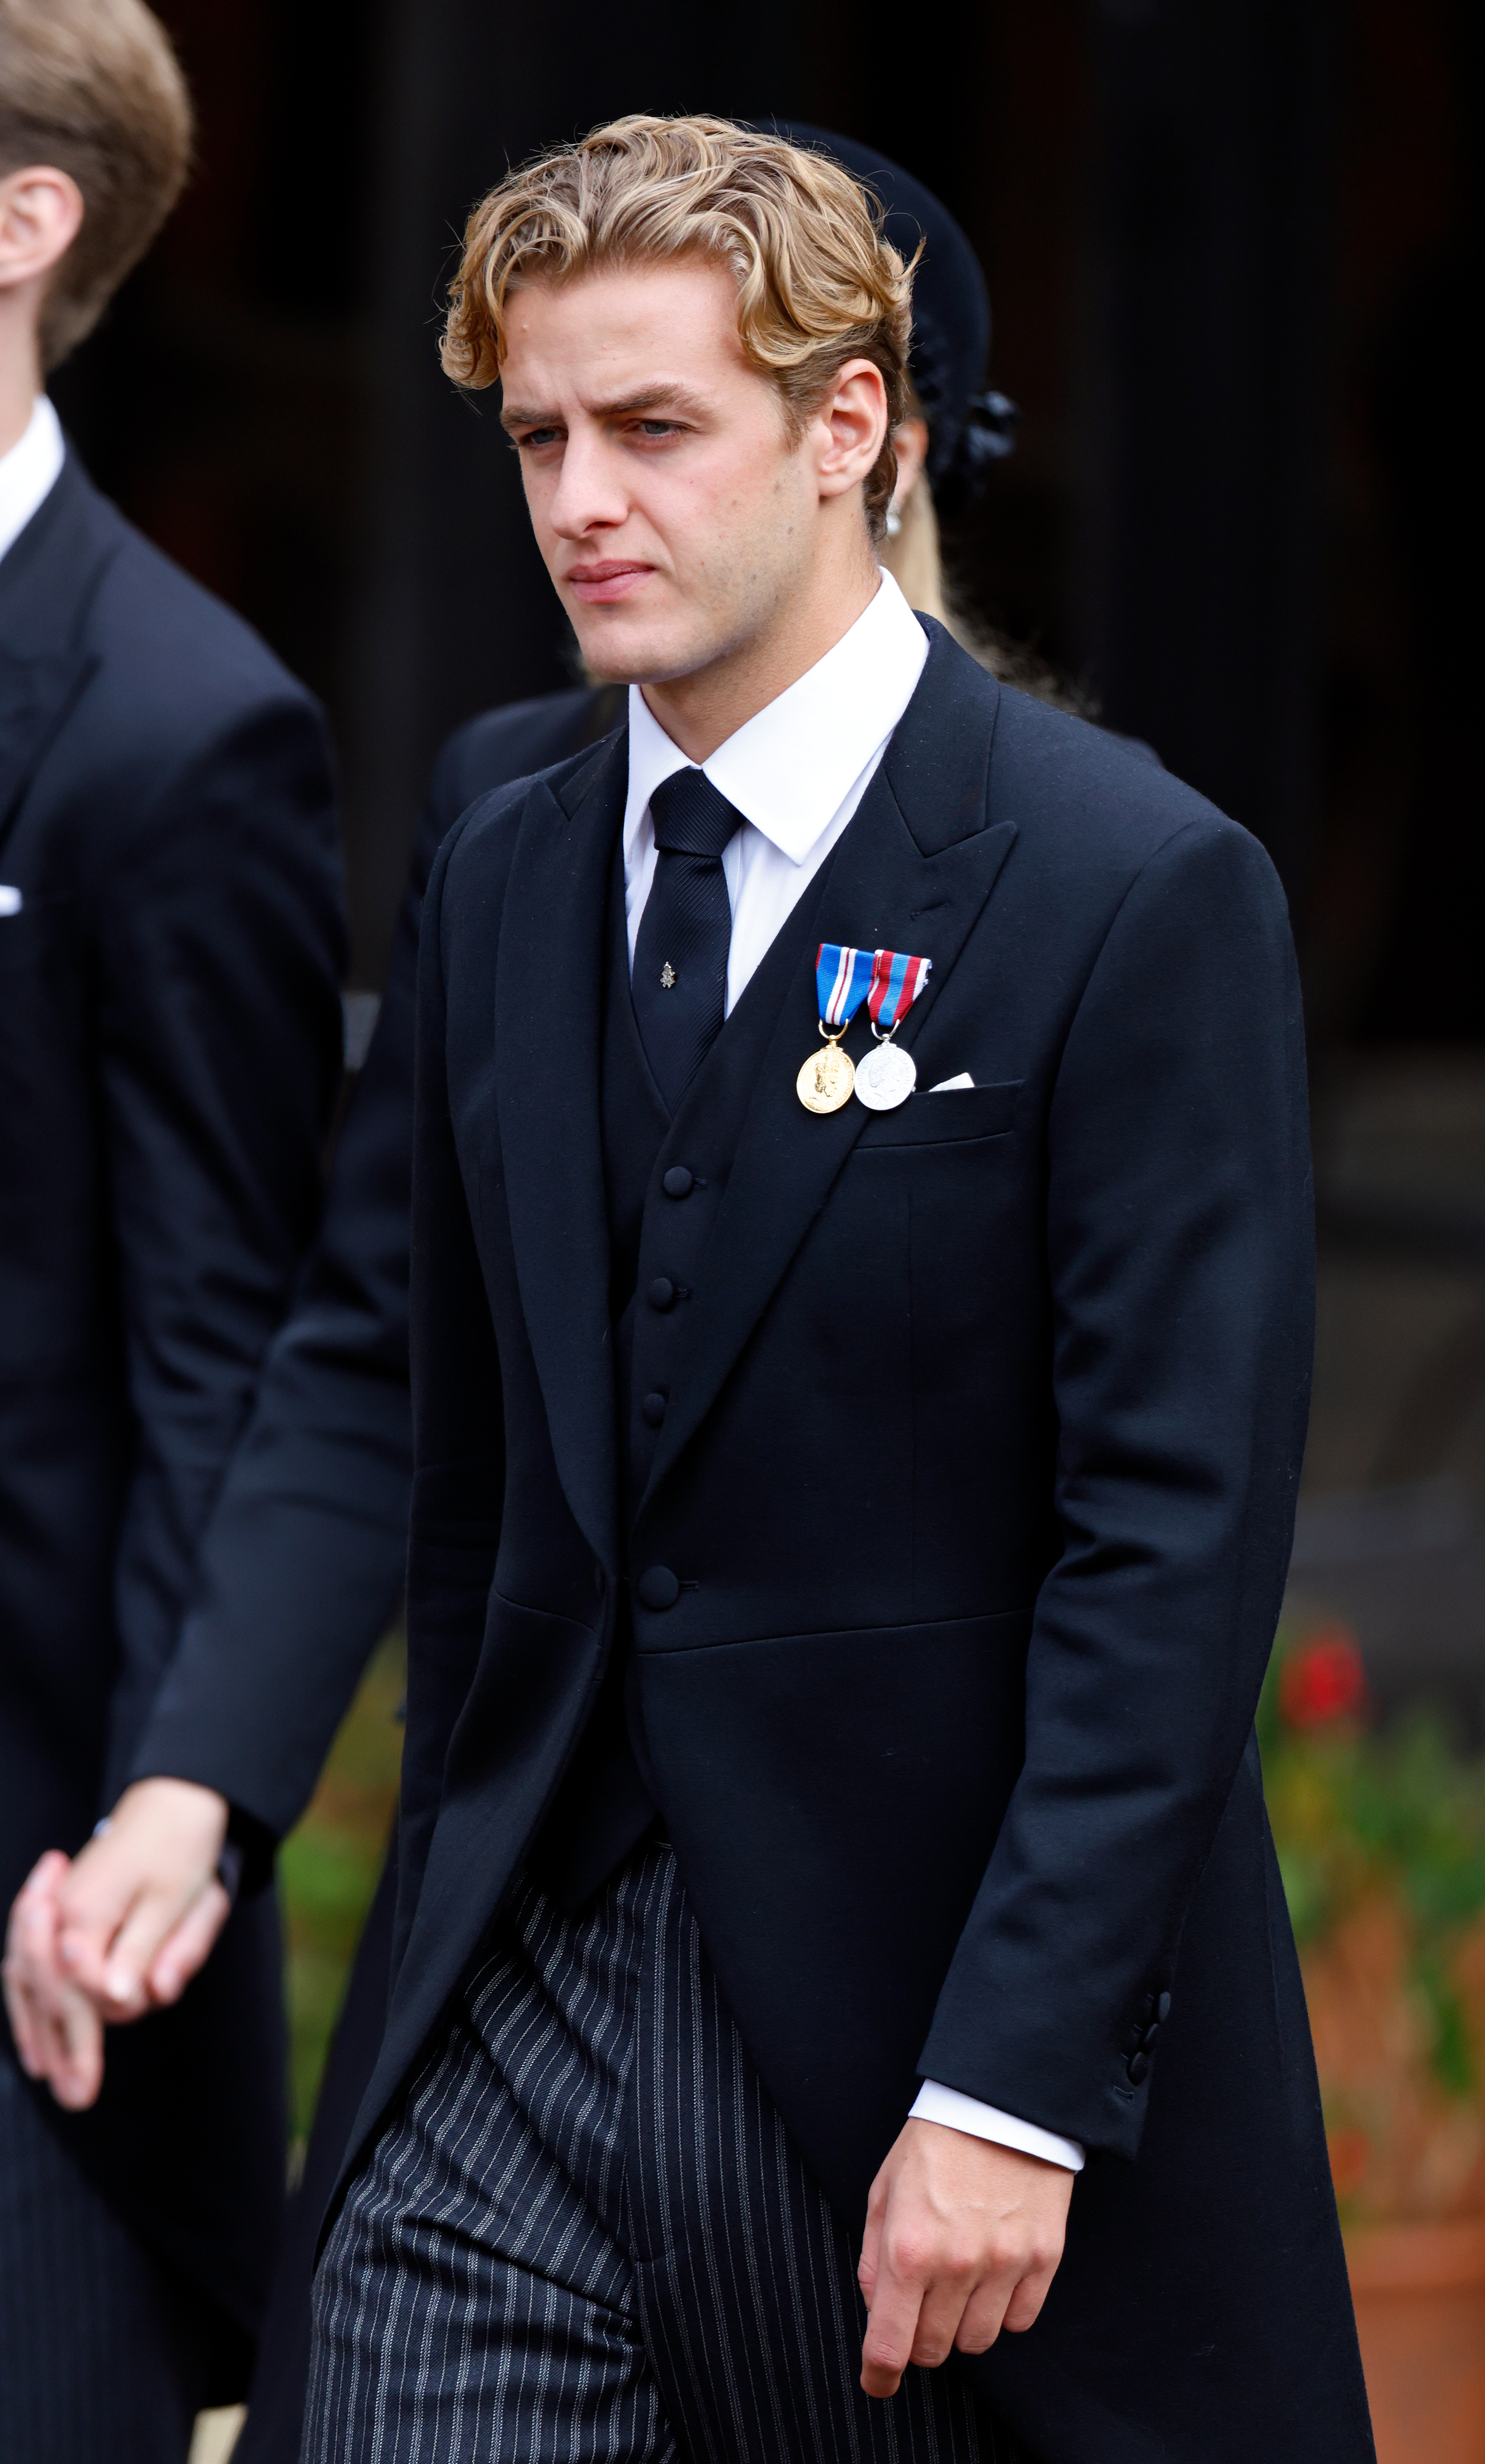 Alexander Ogilvy asiste a la ceremonia de entierro de la reina Elizabeth II en la Capilla de St George, Castillo de Windsor, el 19 de septiembre de 2022 en Windsor, Inglaterra. | Fuente: Getty Images